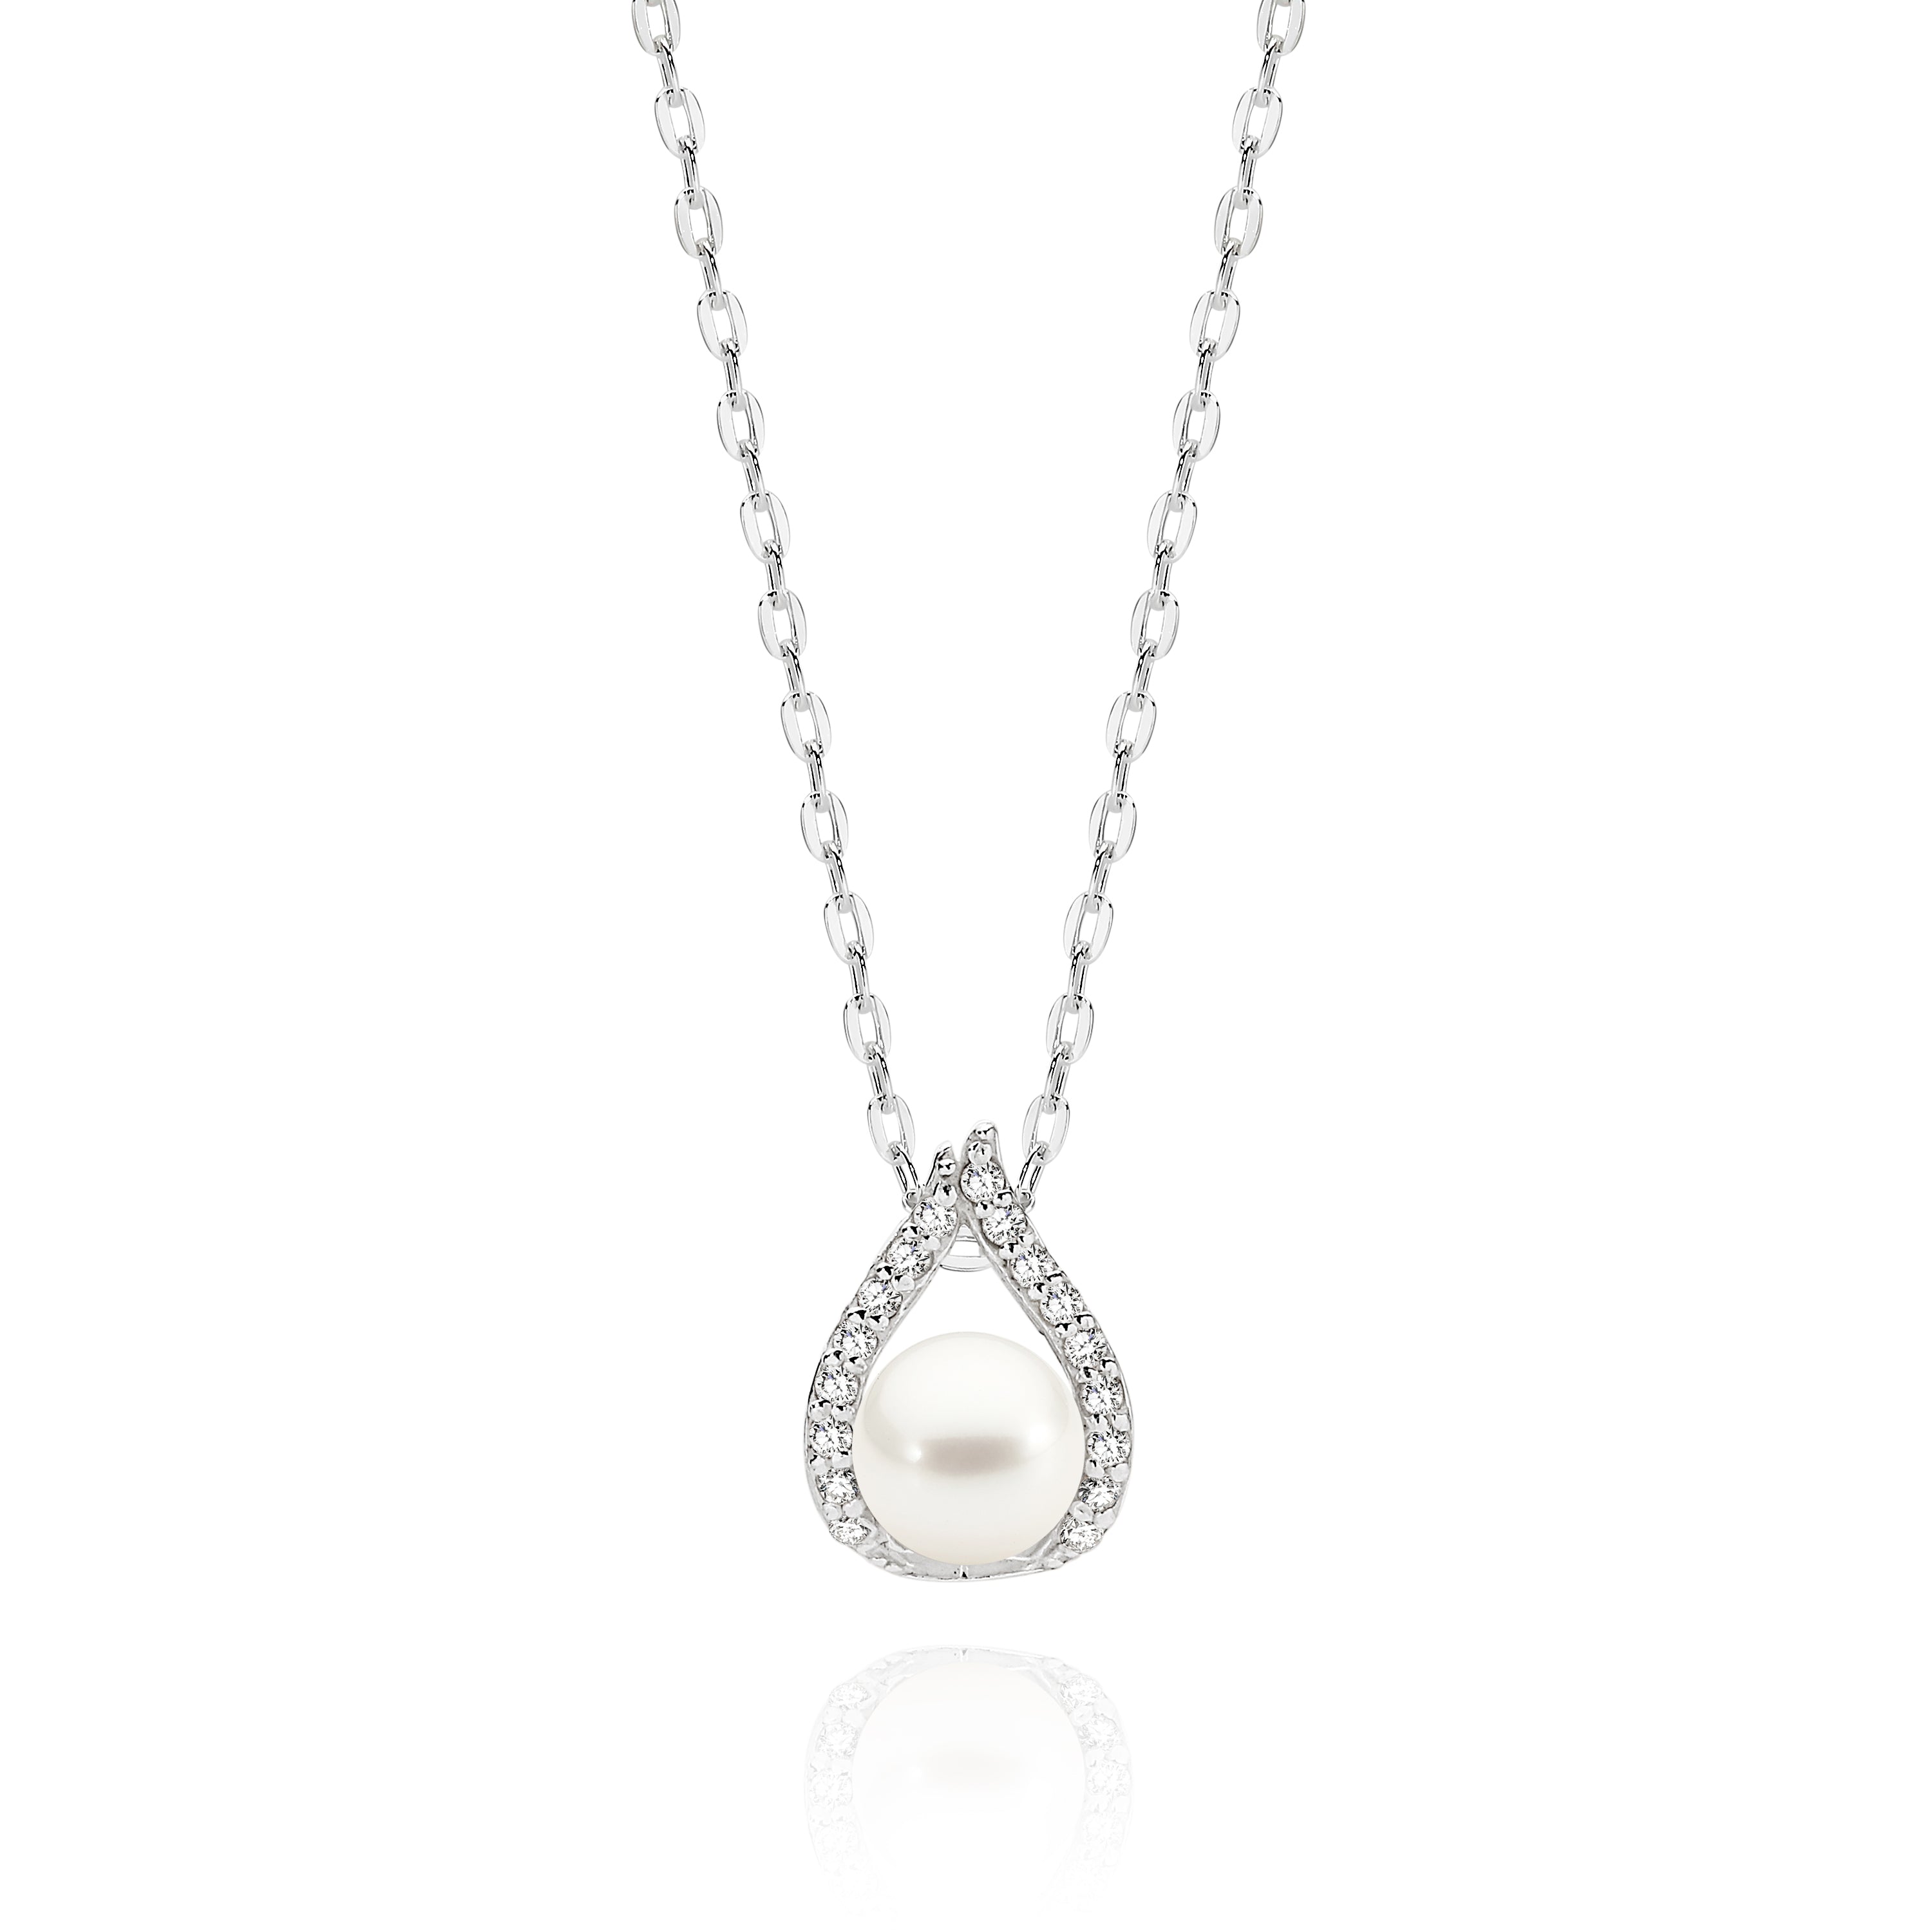 Silver pearl necklet